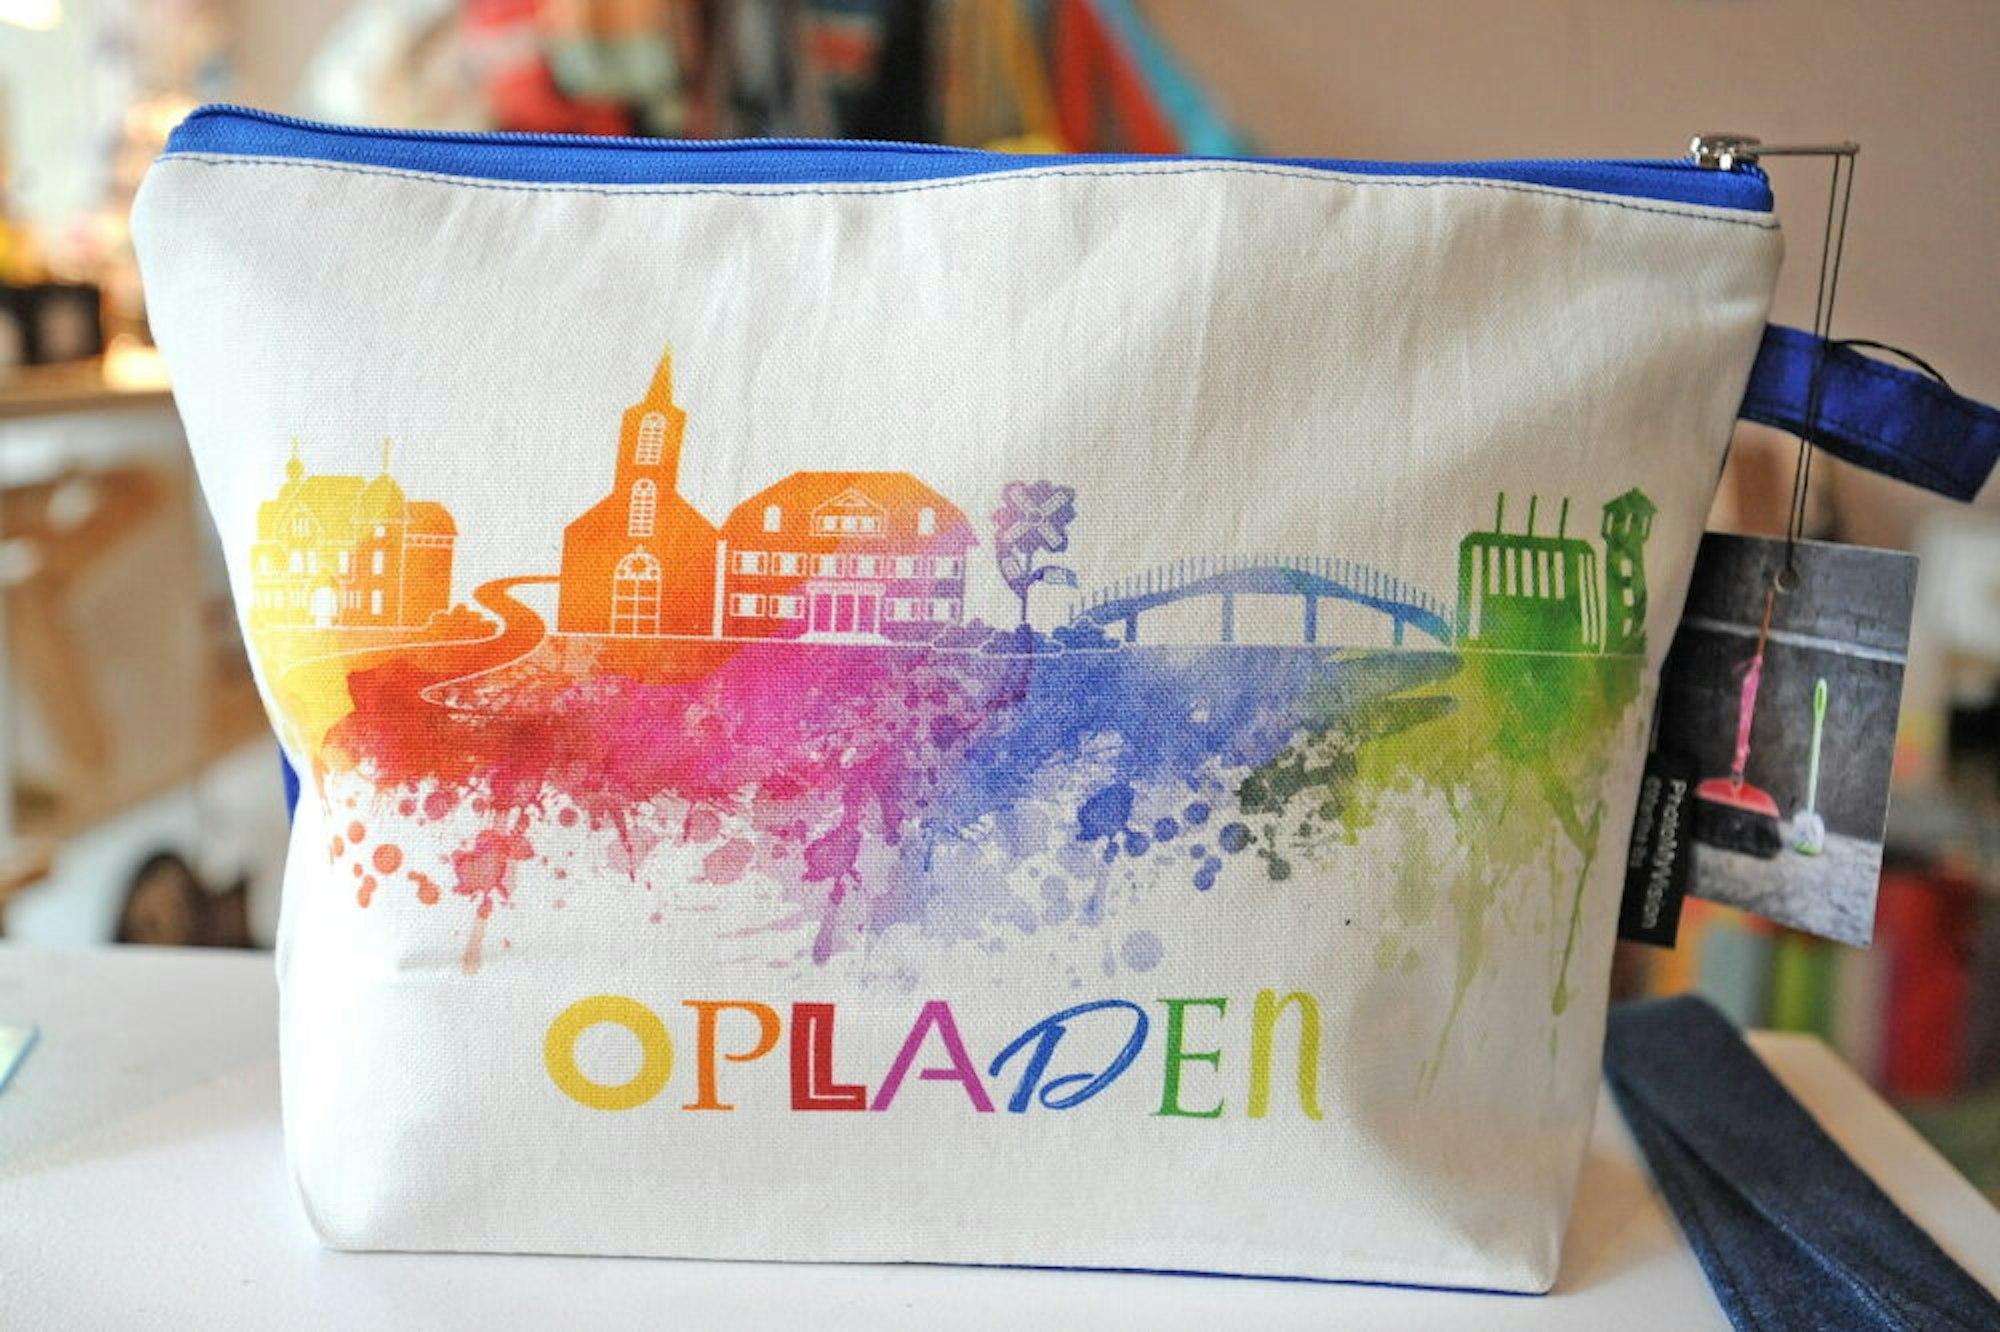 Ein farbenfrohes Bekenntnis zu Opladen stellt diese Tasche dar, von Angelika Huth gemeinsam mit einer Opladener Grafikerin designt.